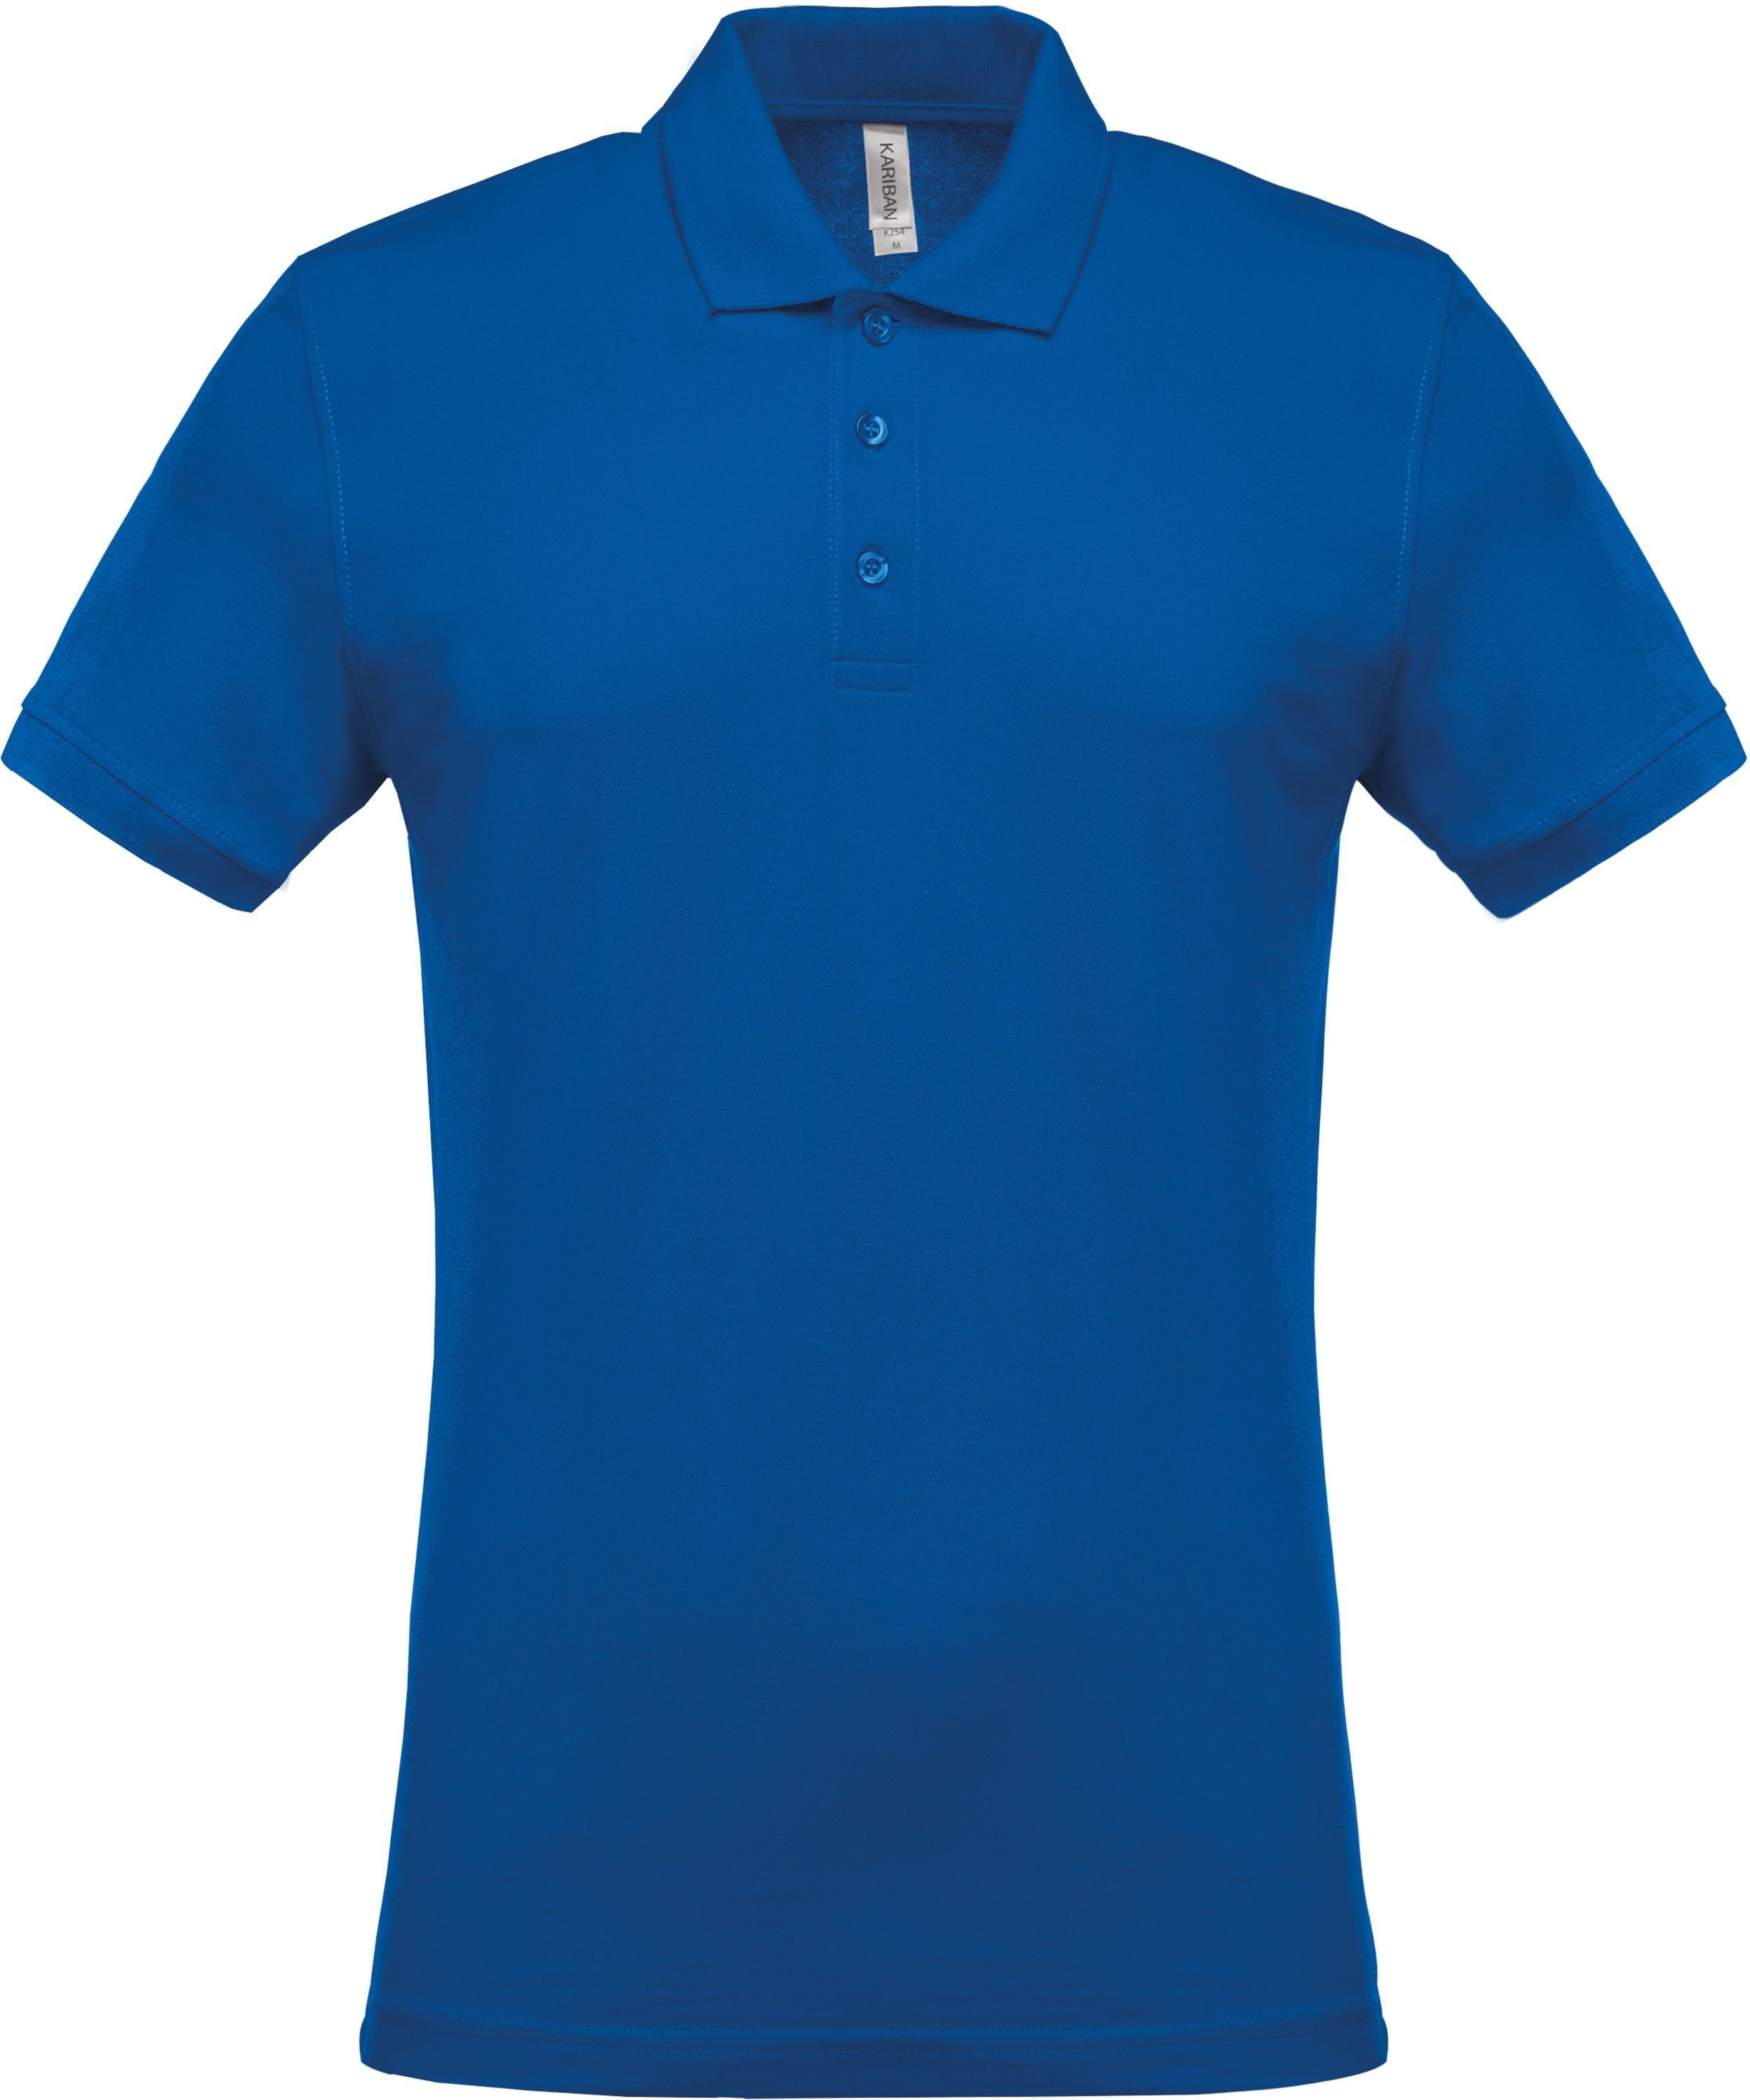 Polo personnalisé piqué manches courtes golf team - K254 couleurs classiques. polo homme Kariban royal blue S 